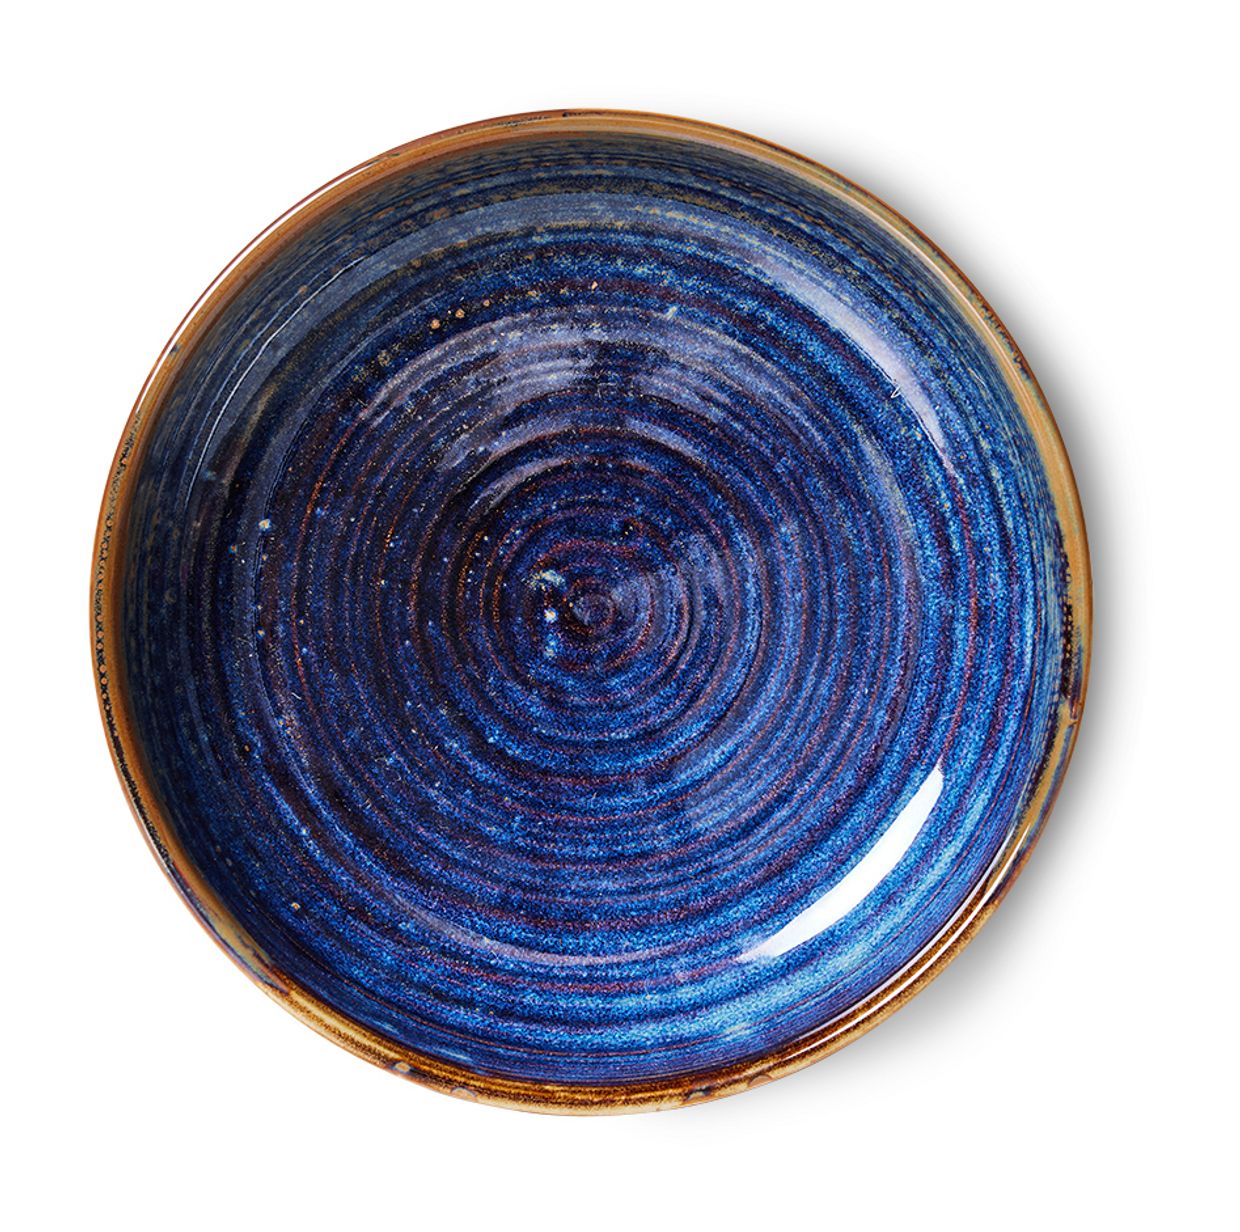 Chef ceramics: deep plate L, rustic blue